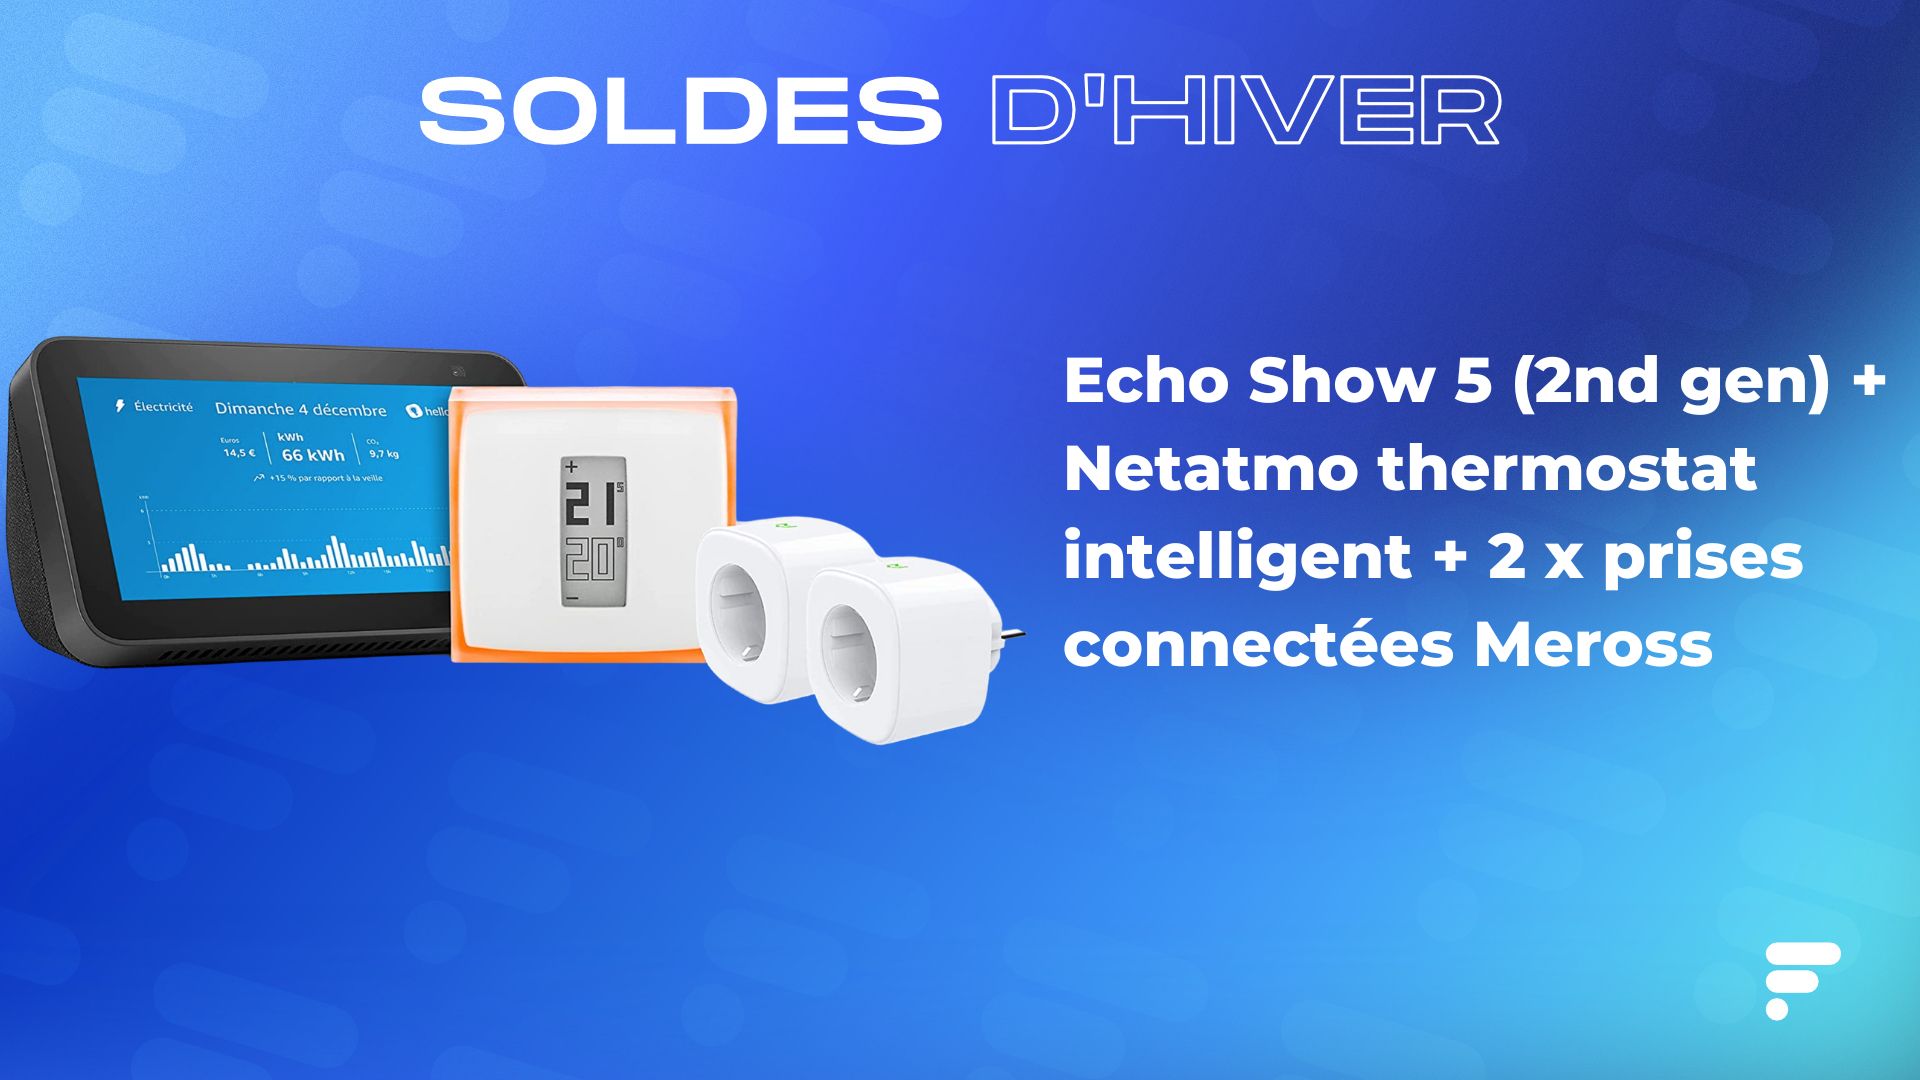 Ce kit connecté ( Echo Show + thermostat + prises) est soldé à -30 %